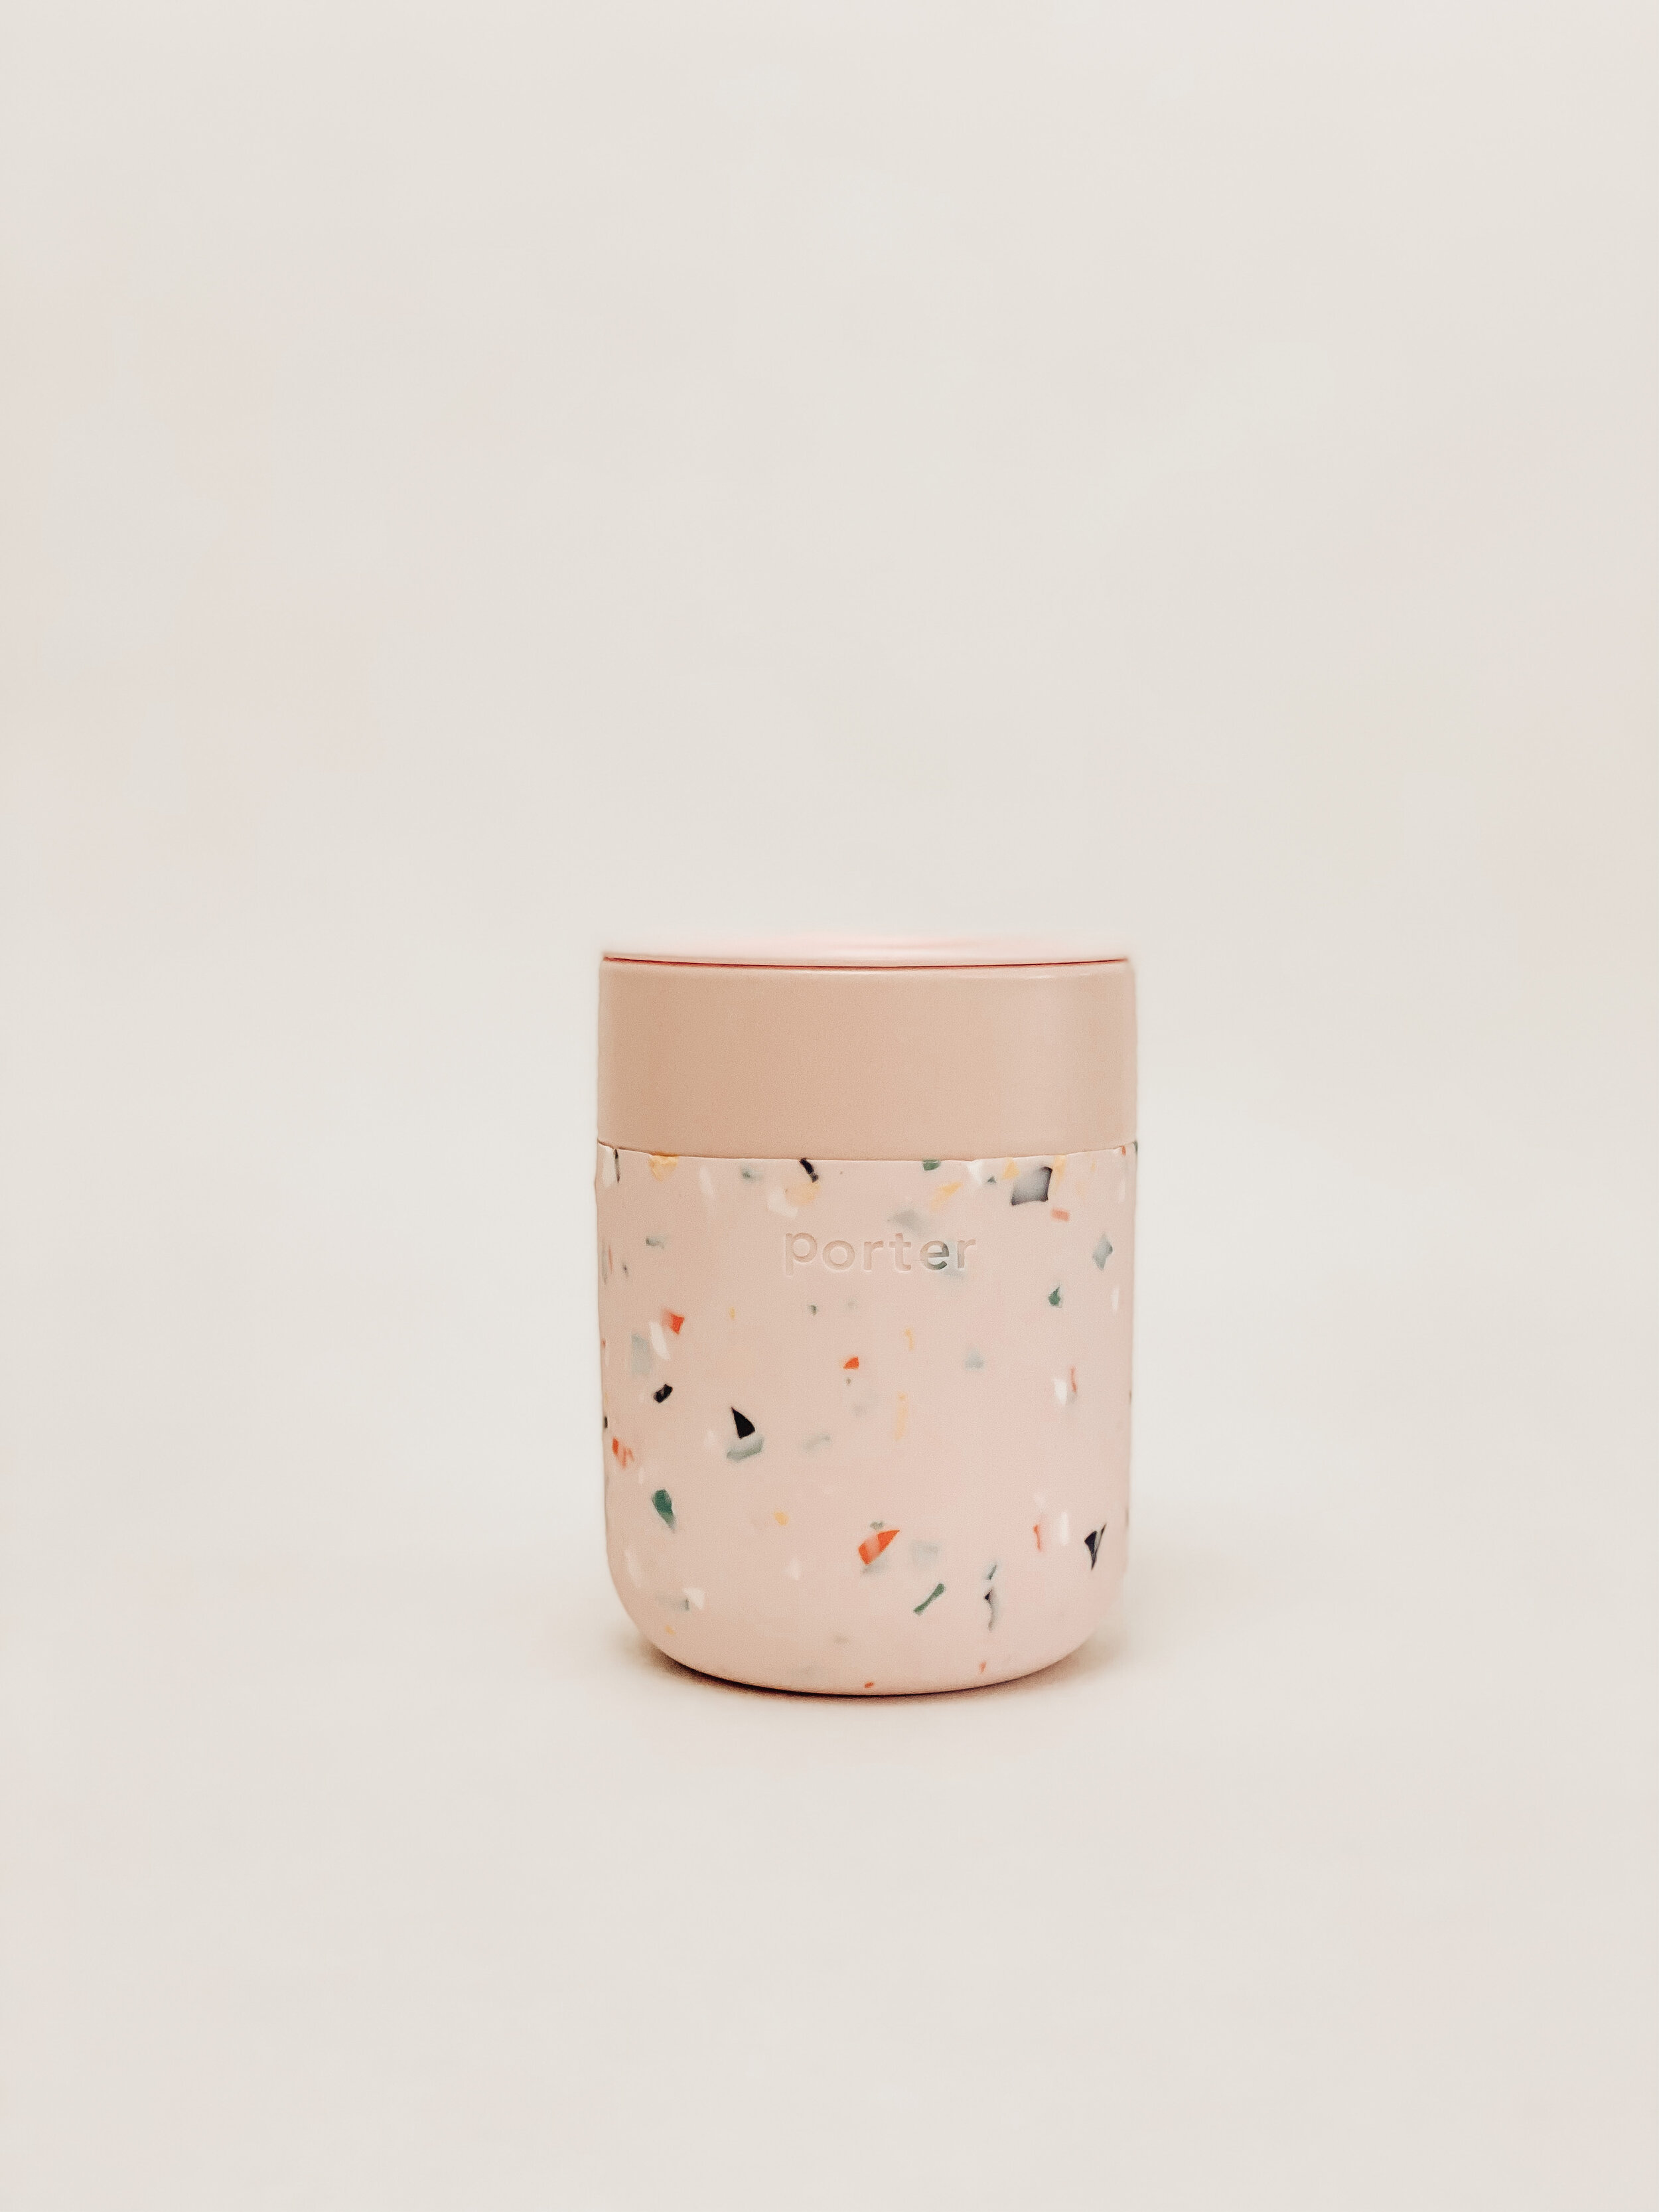 W&P Porter Ceramic Mug 12oz — Package + Press